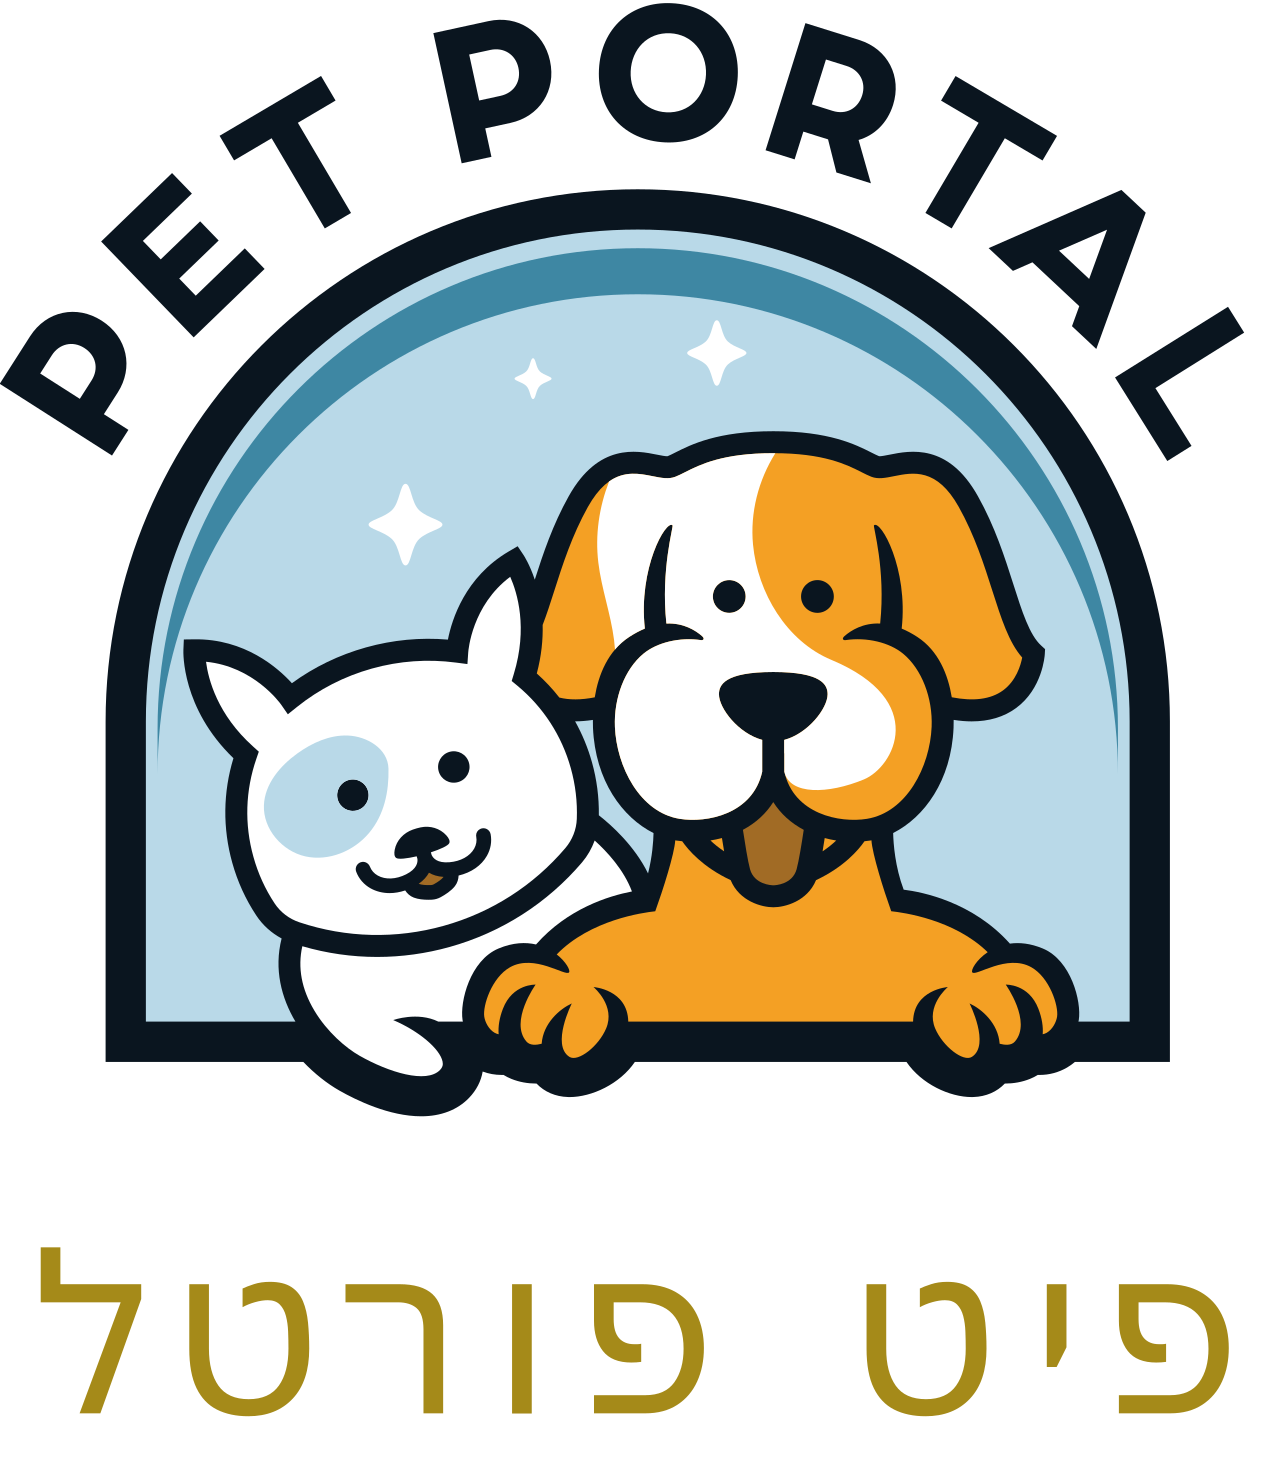 PET PORTAL's logo